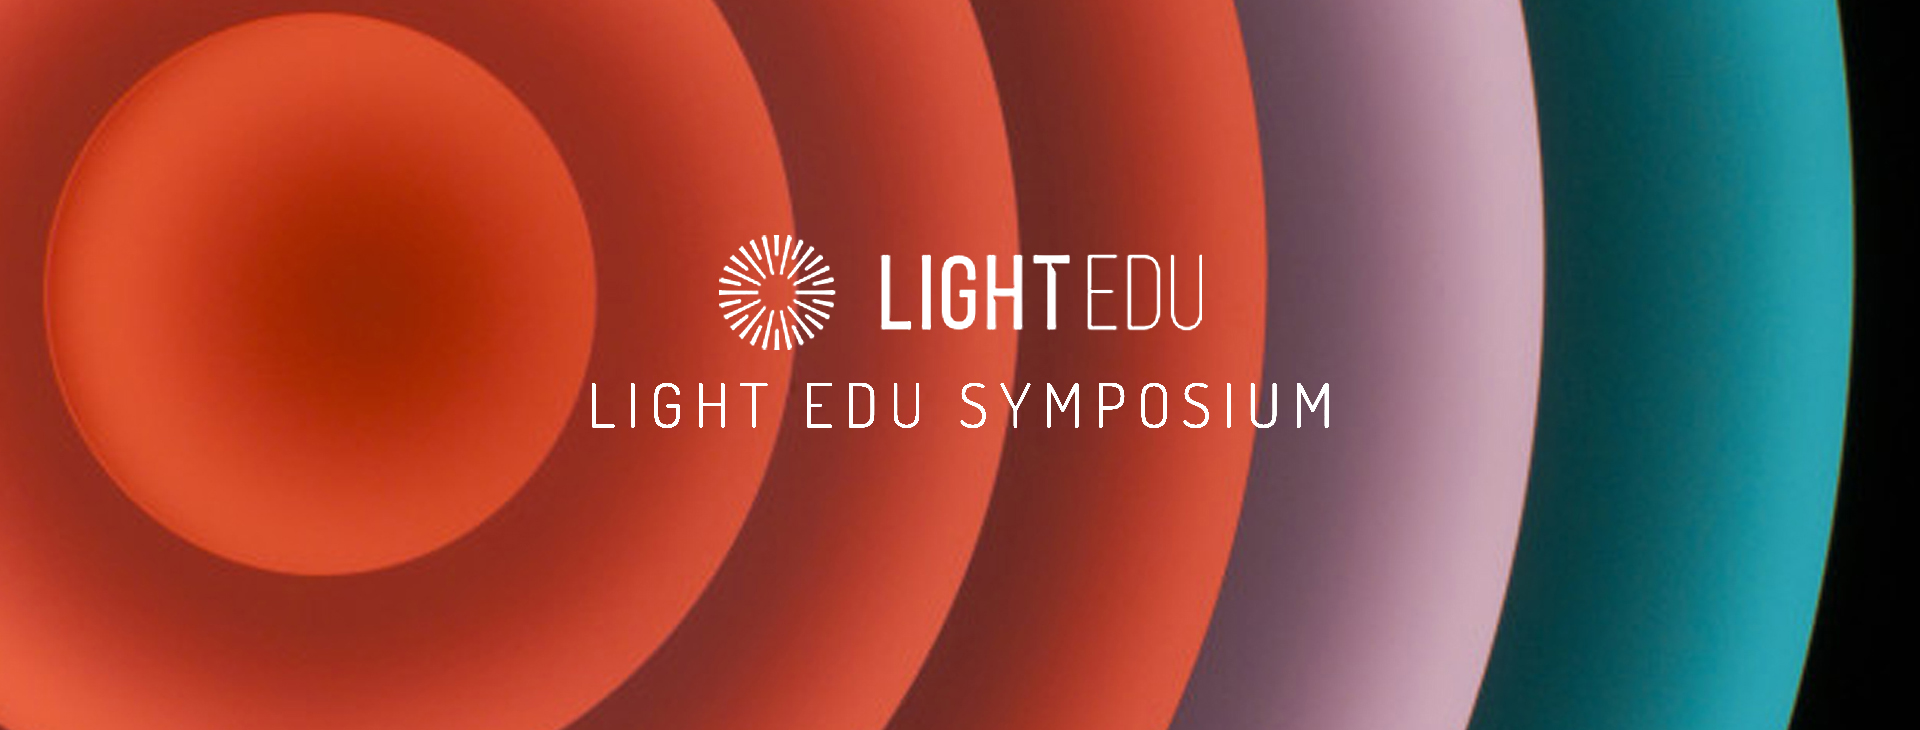 LIGHT EDU Symposium, Timisoara, Romania, 3 - 5 October 2016